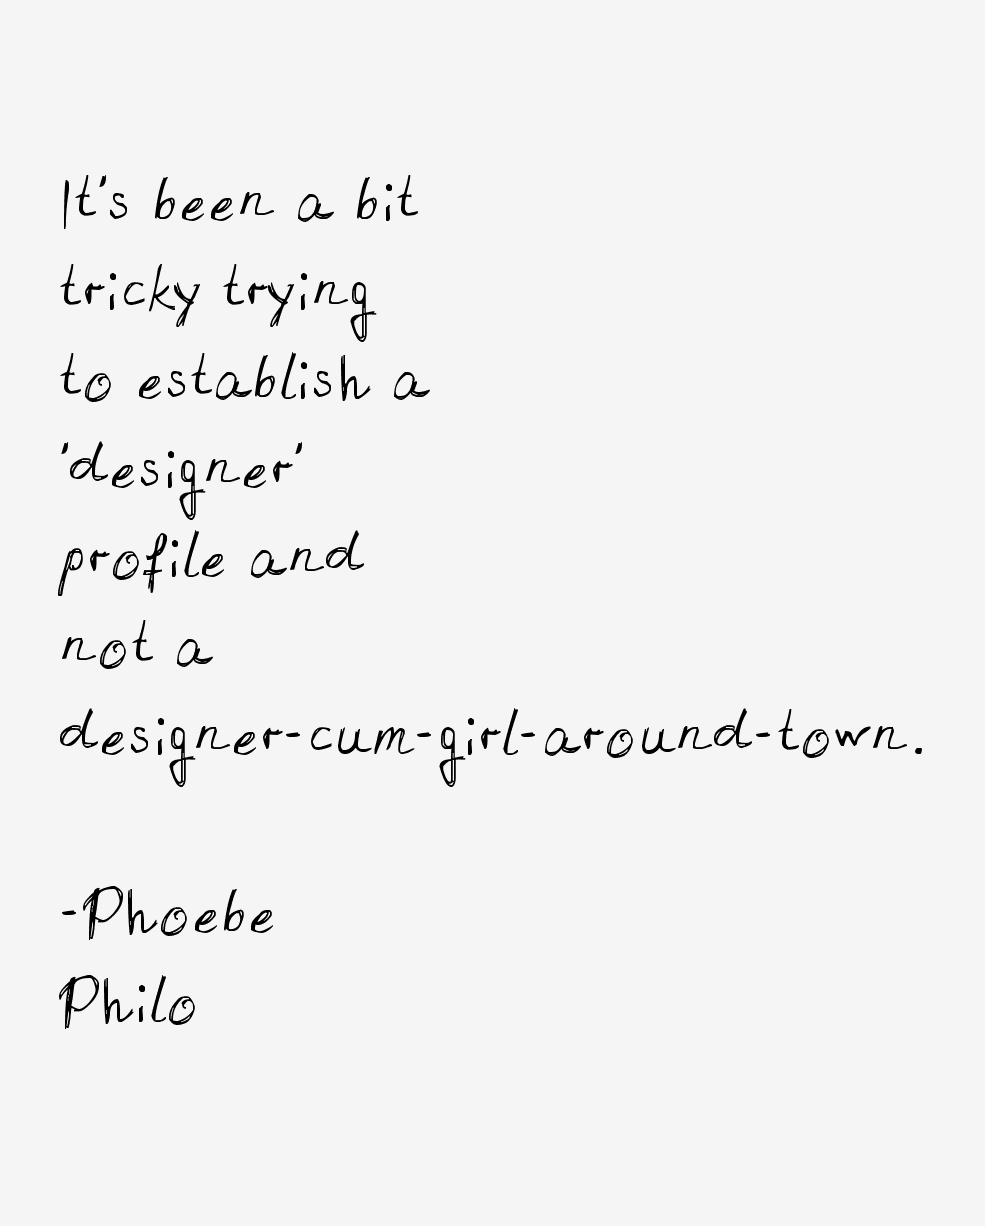 Phoebe Philo Quotes